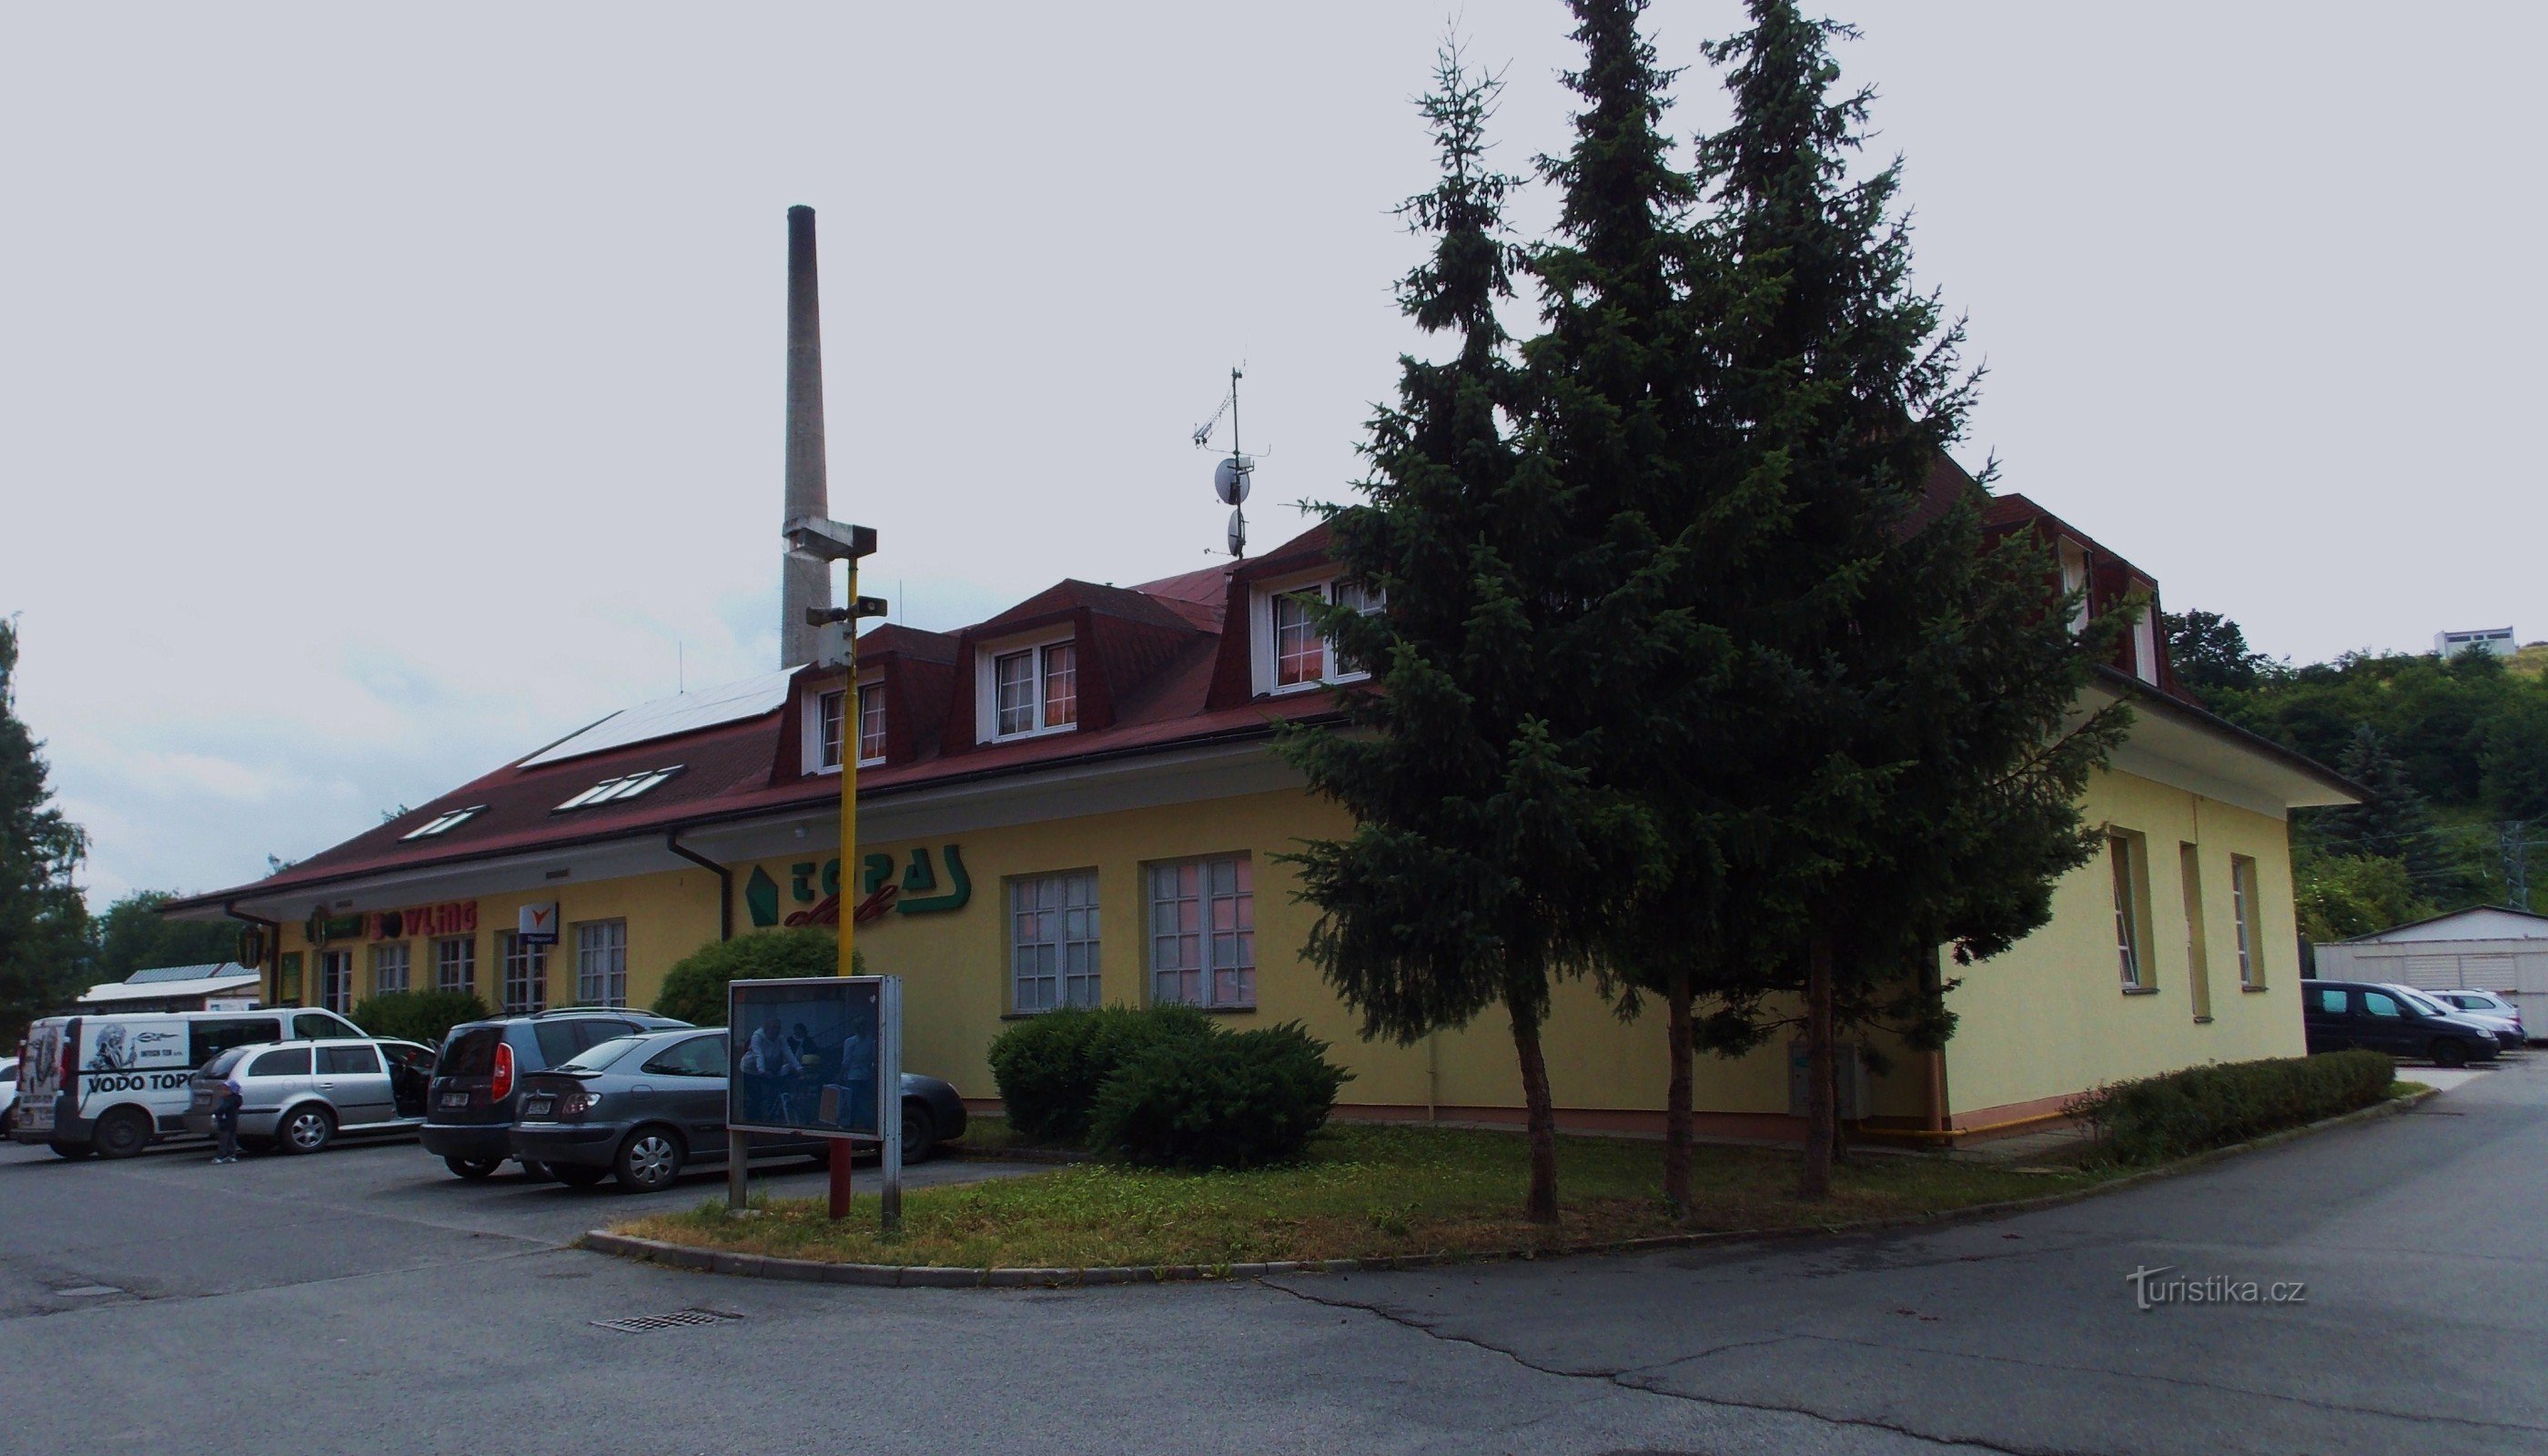 Topas Club in Brumov - Bylnice